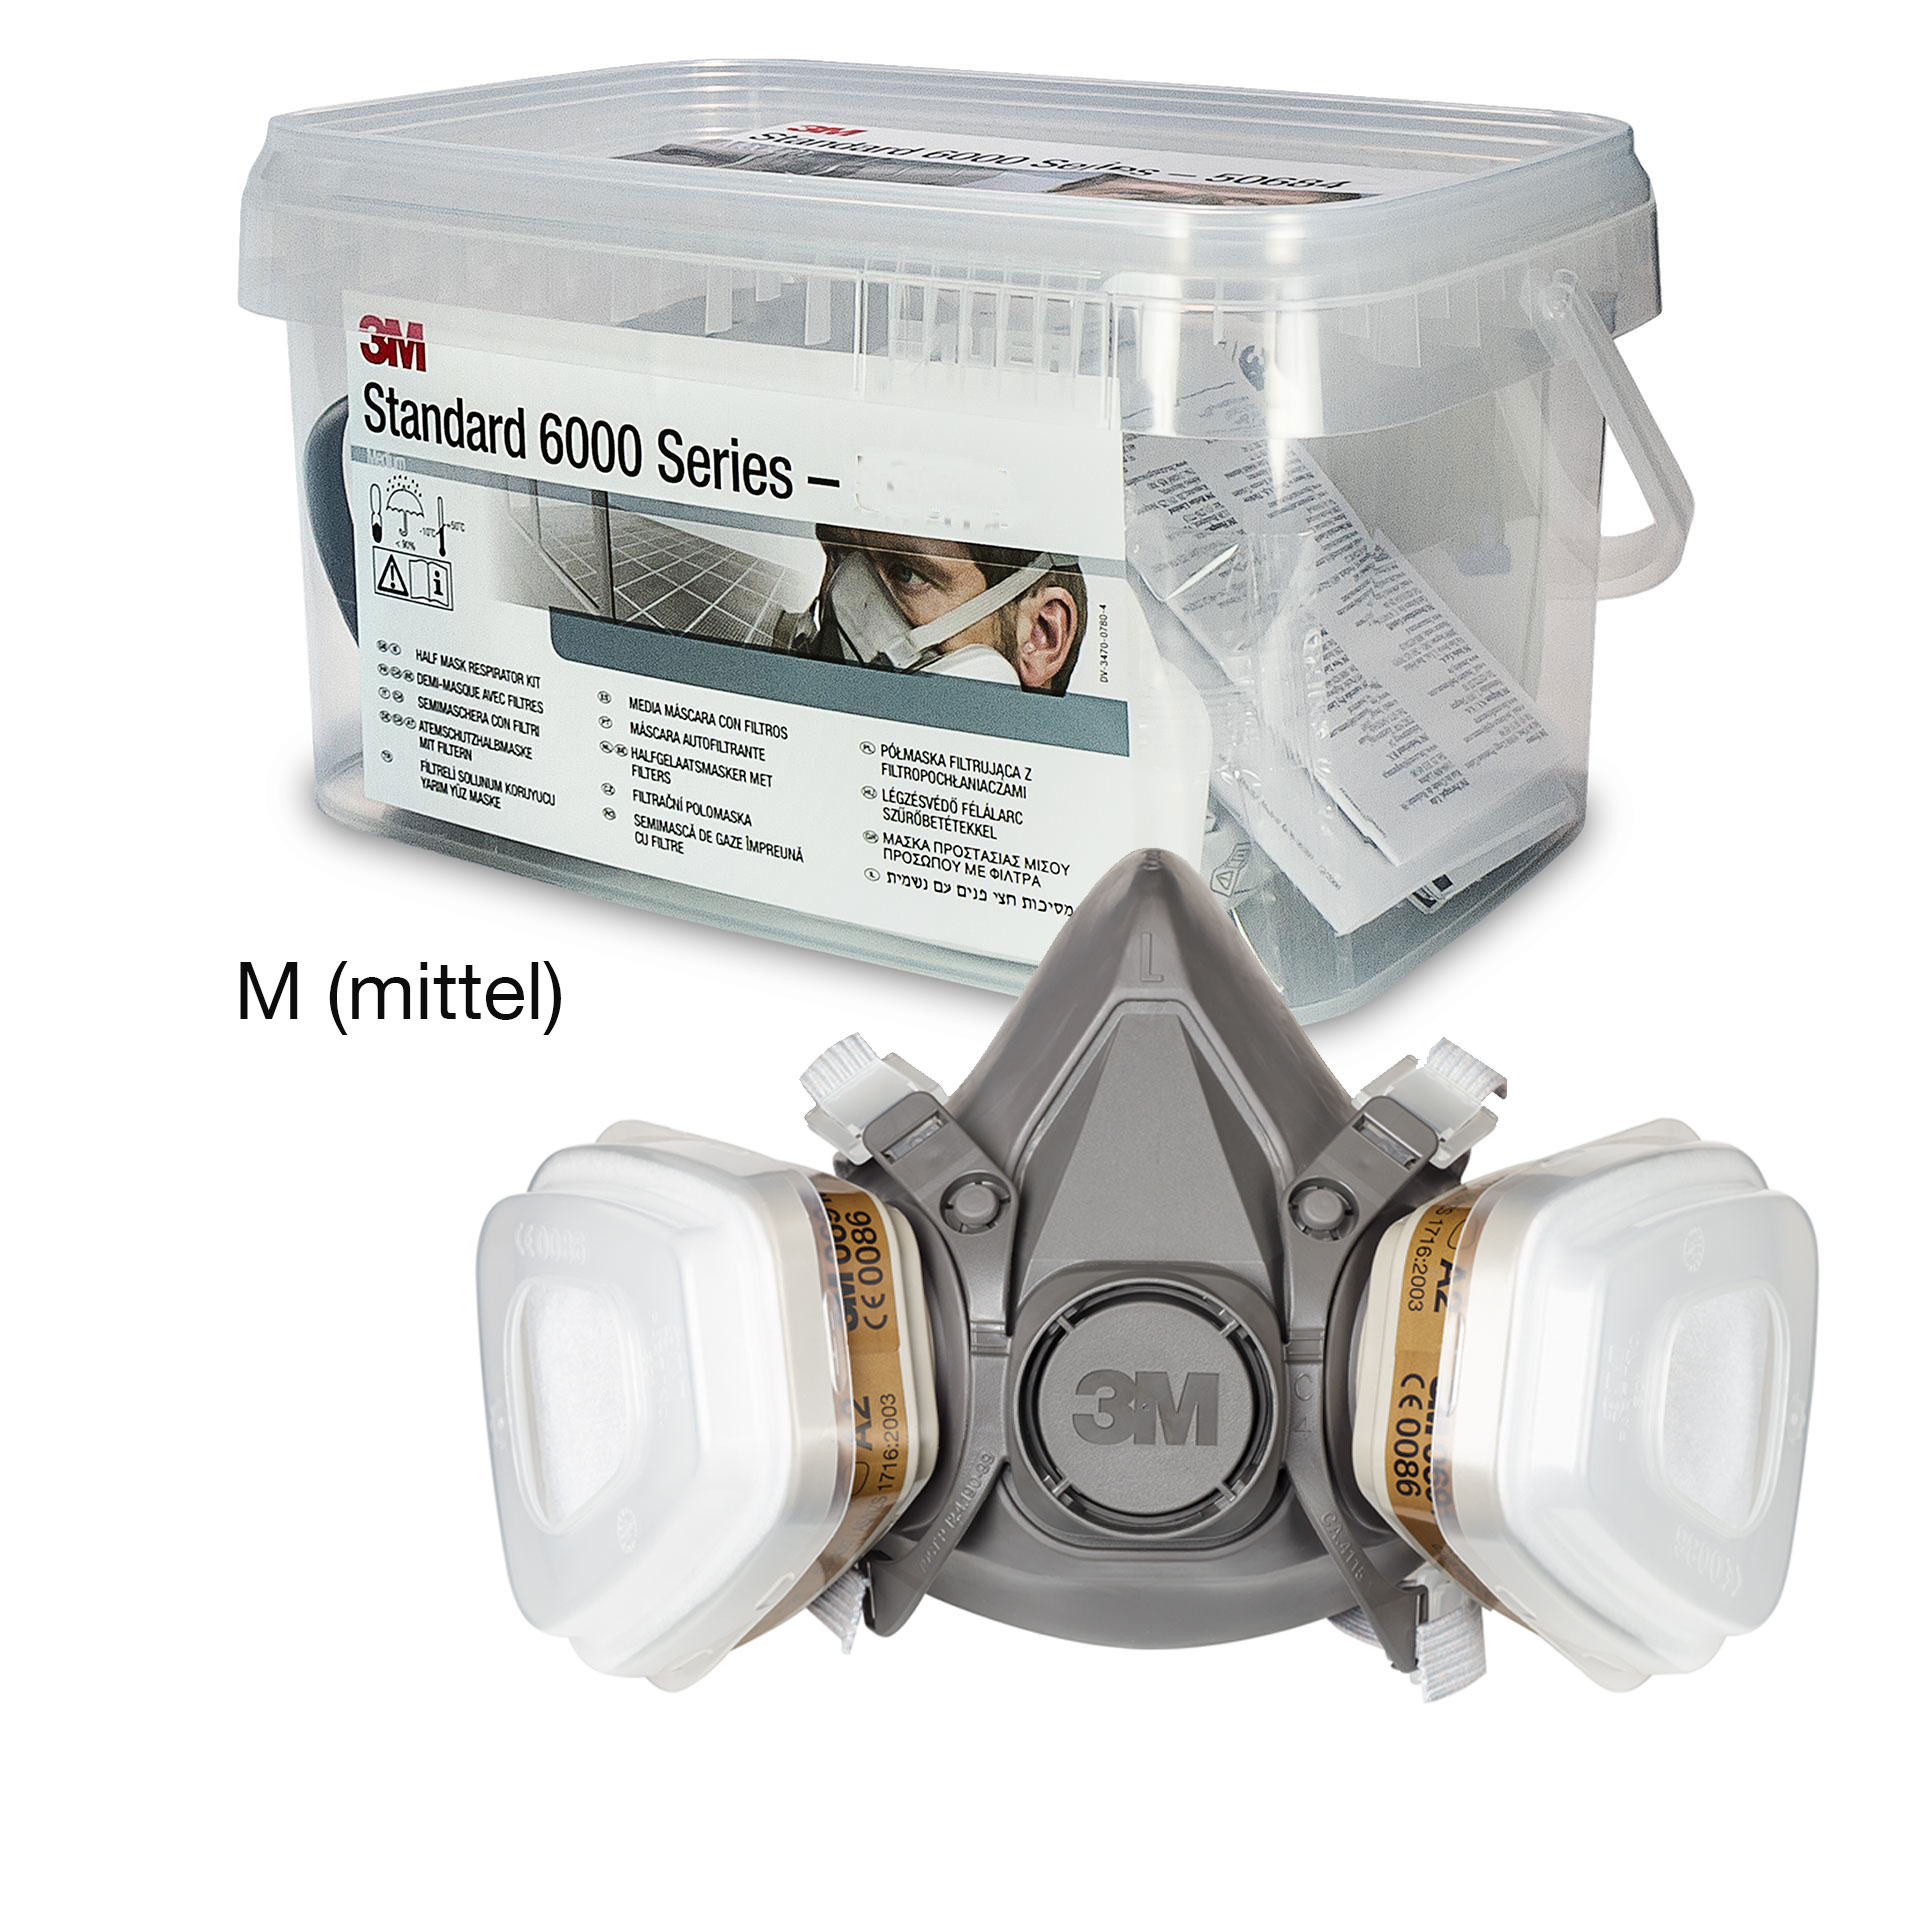 3M 6200Kit Starterkit Atemschutz-Halbmaske, mit Filtern A2P2 R, in Aufbewahrungsbox, Grösse M (mittel)